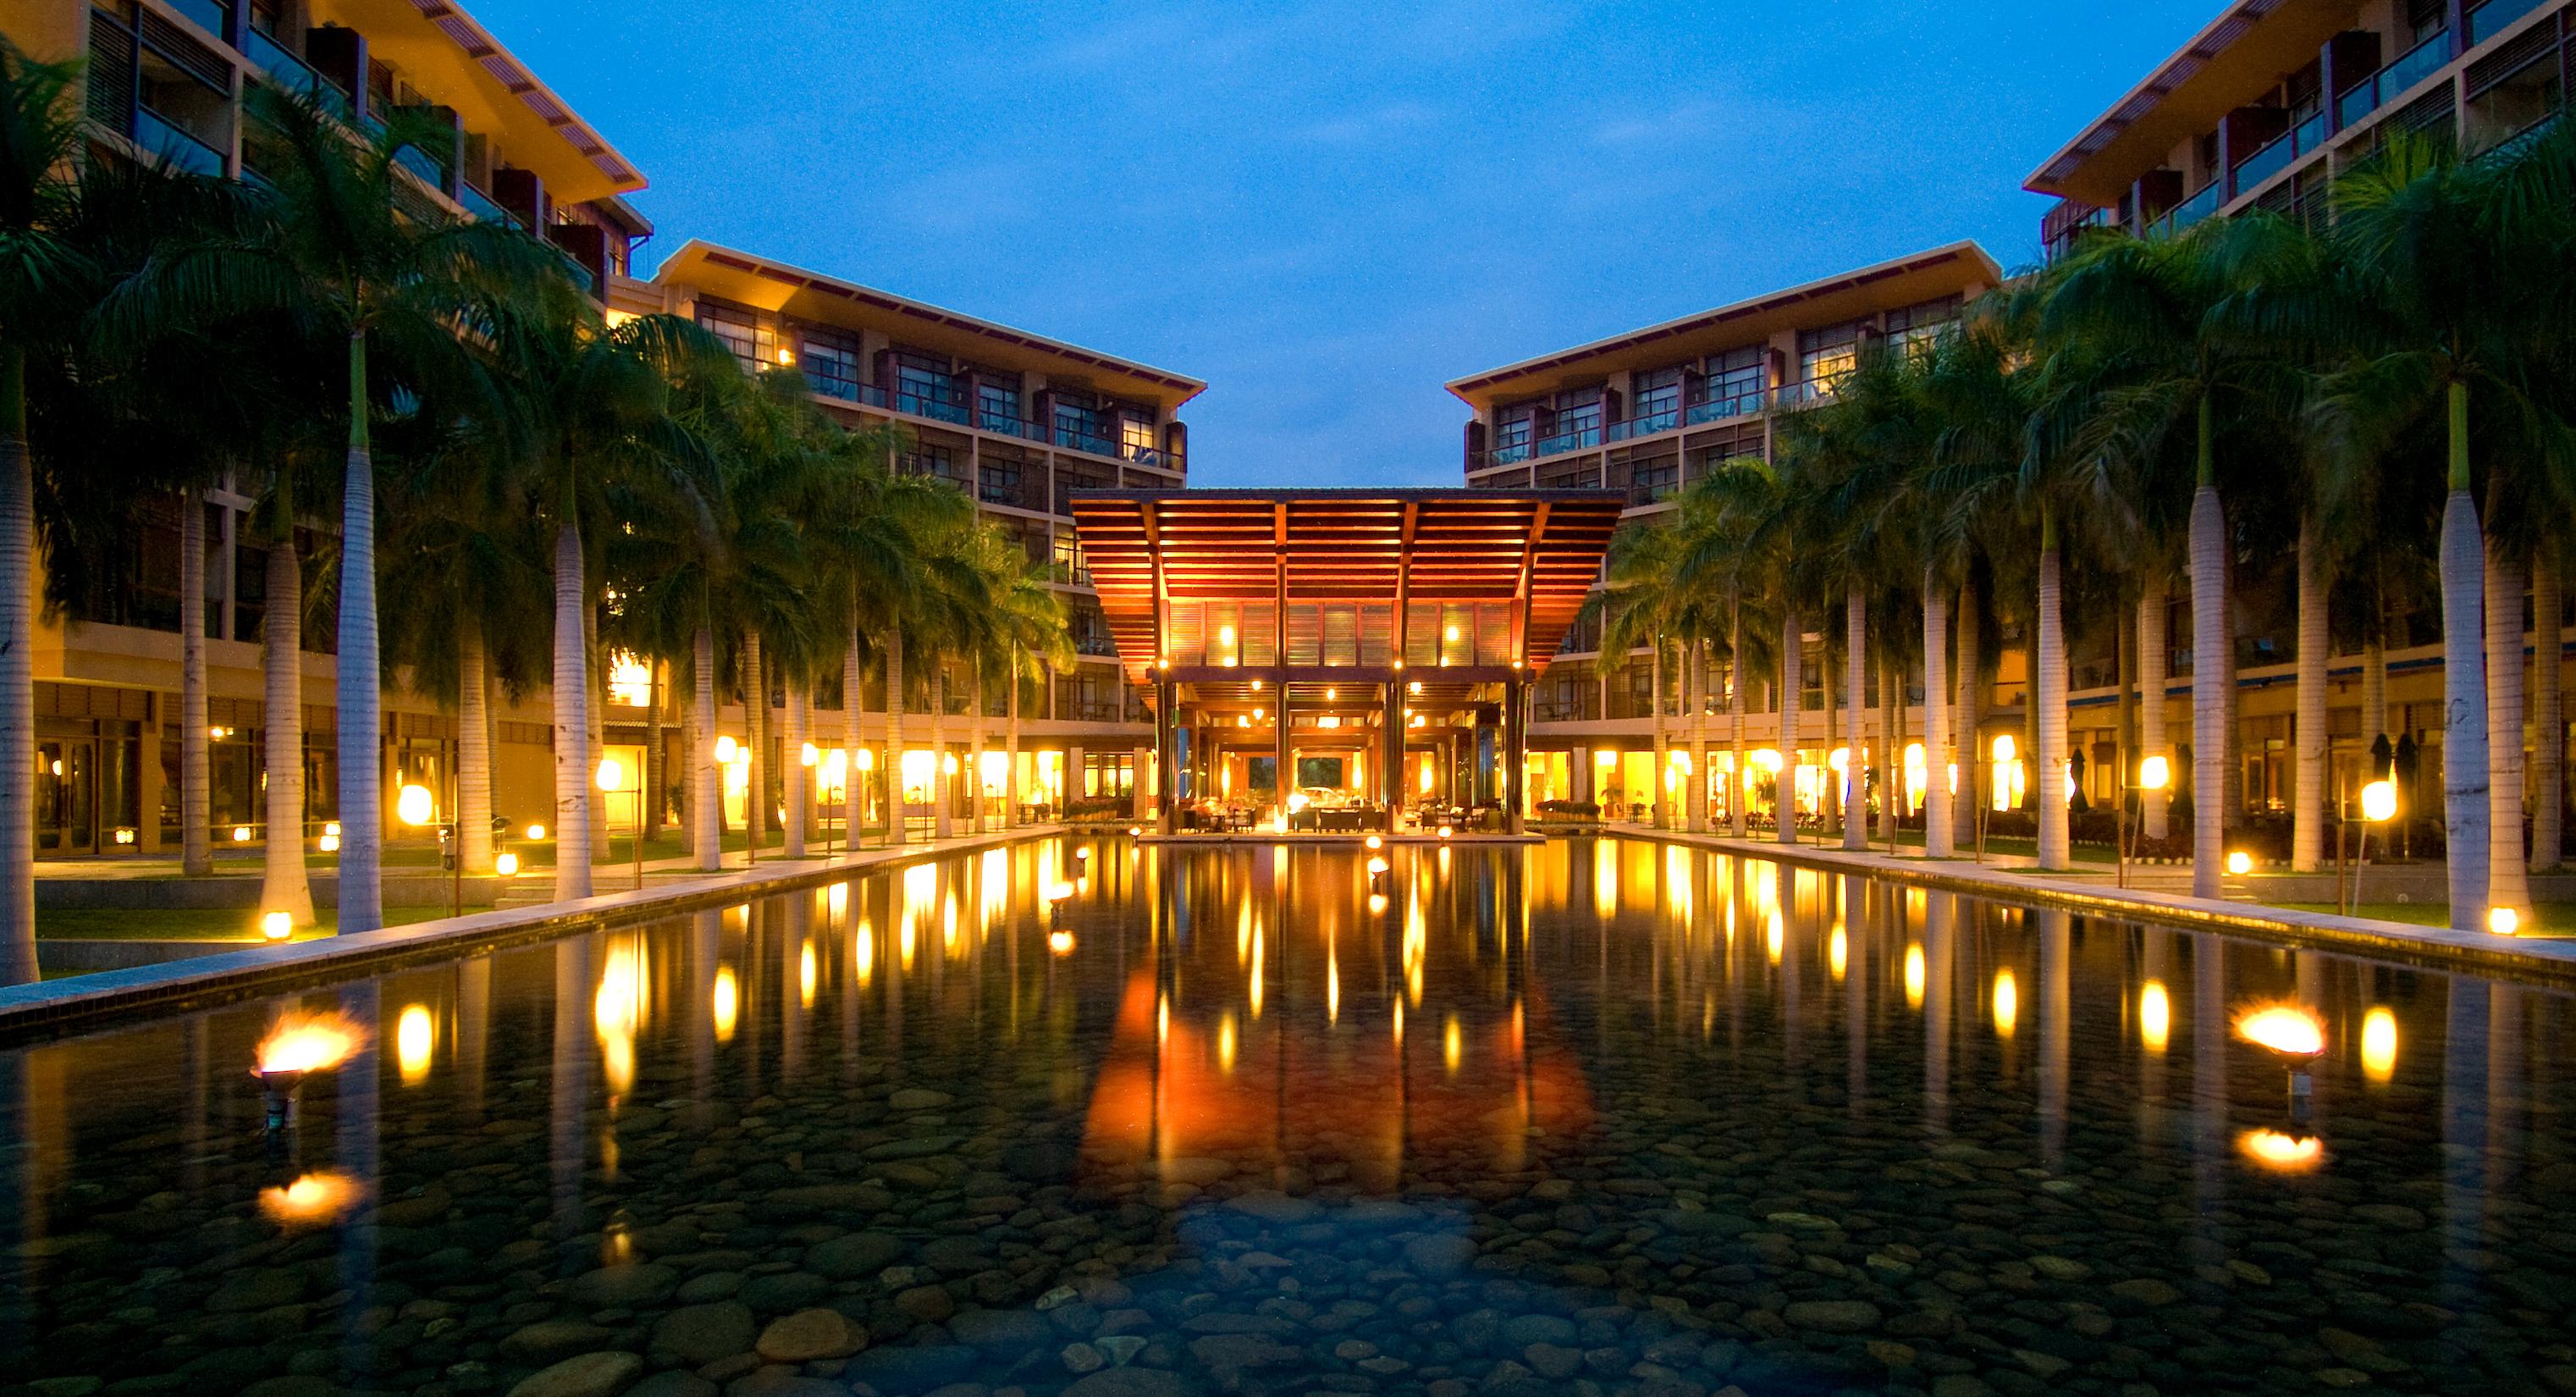 海南三亚湾红树林度假会展酒店-建筑设计作品-筑龙建筑设计论坛